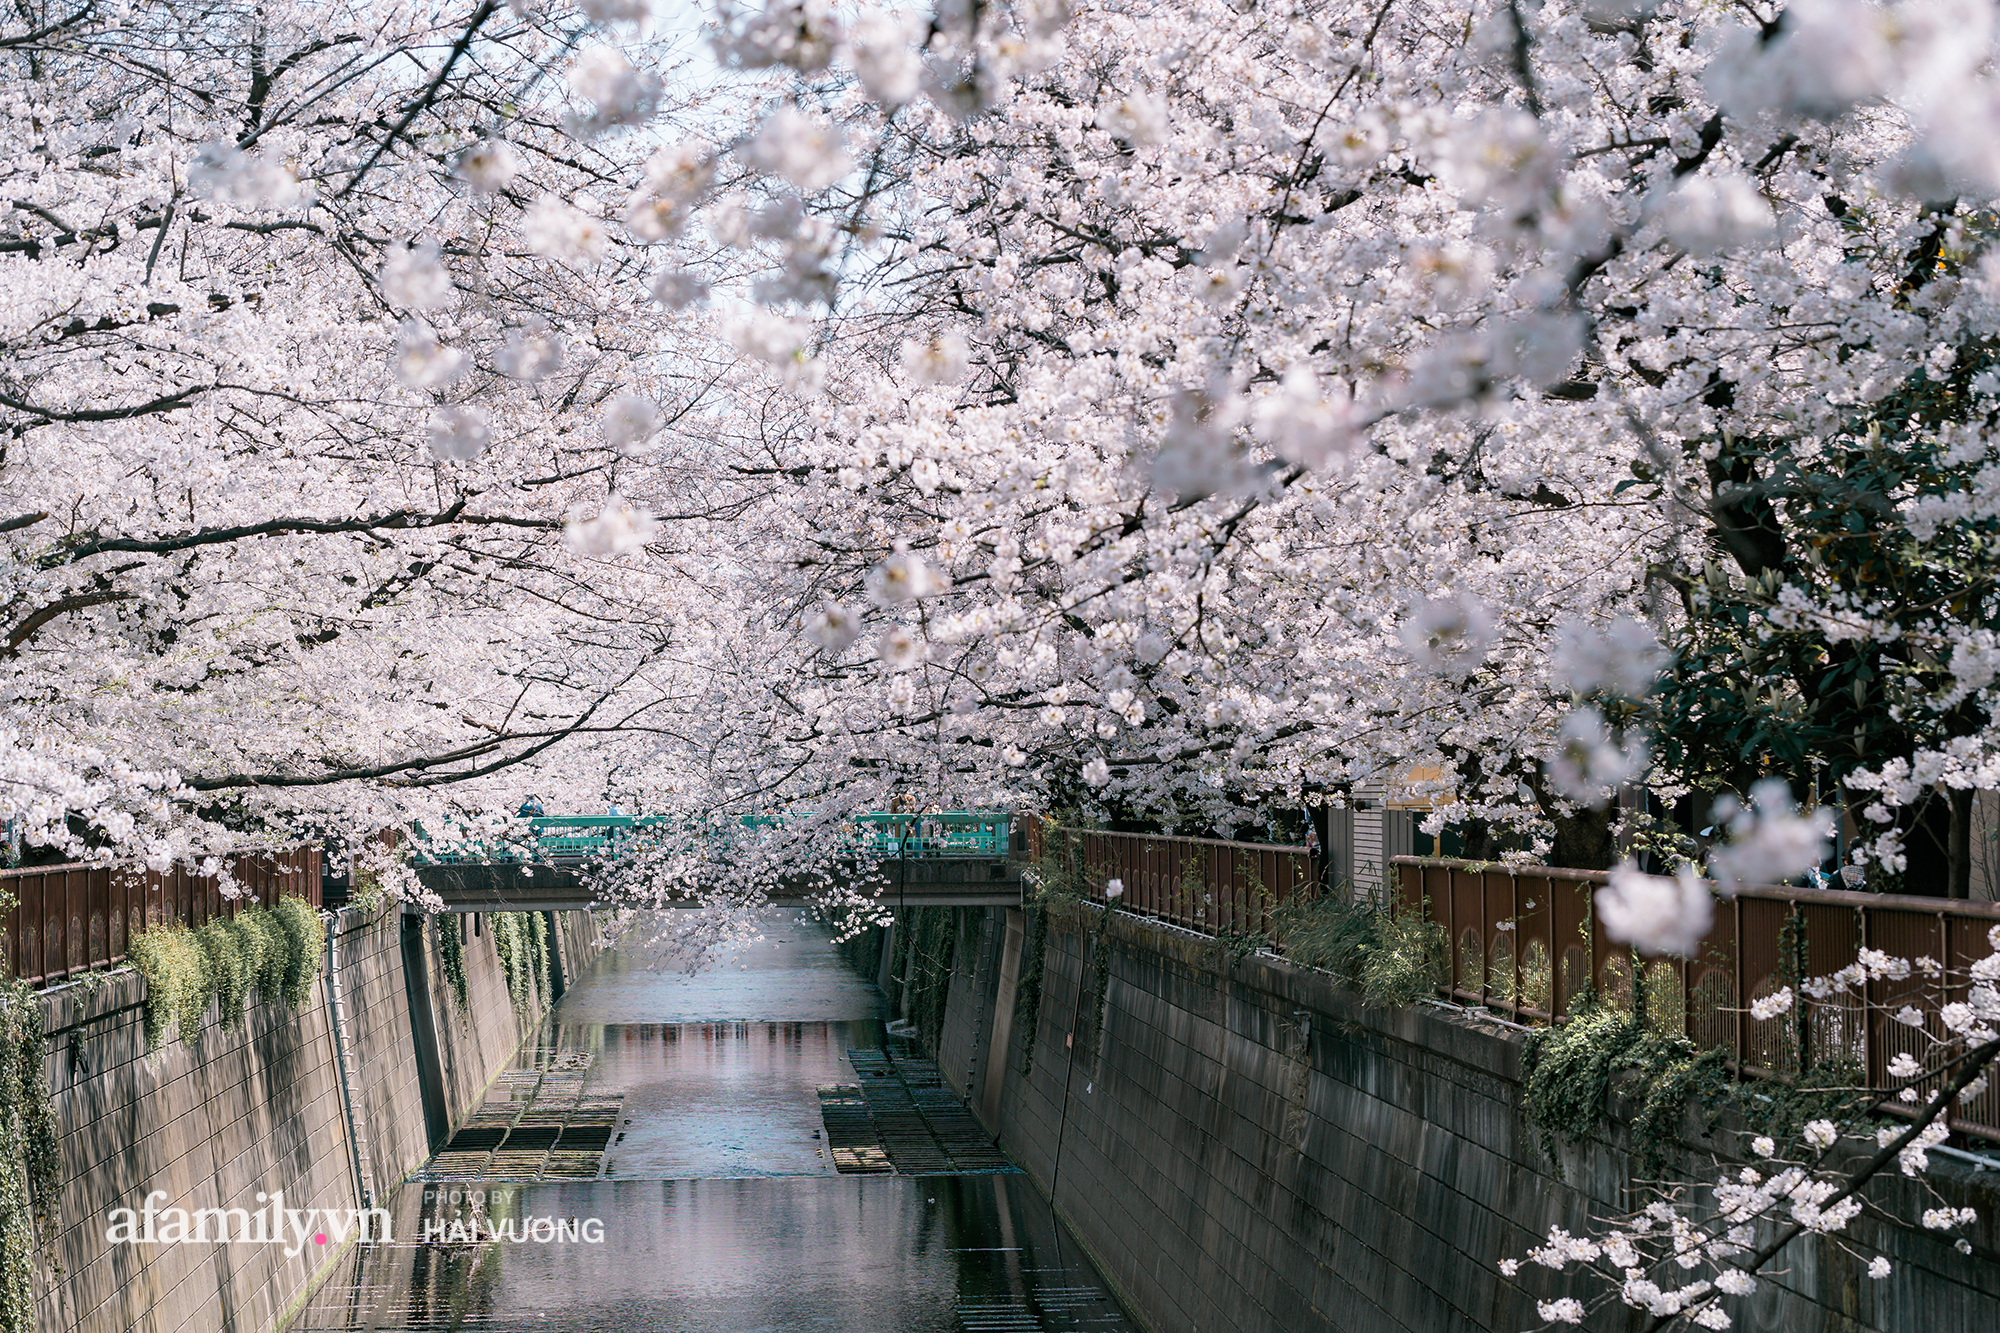 Siêu ngây ngất cảnh toàn thủ đô Tokyo bao trùm dưới hàng trăm nghìn cây hoa anh đào bởi hiện tượng nở sớm nhất trong 1.200 năm qua ống kính của anh chàng người Việt - Ảnh 3.